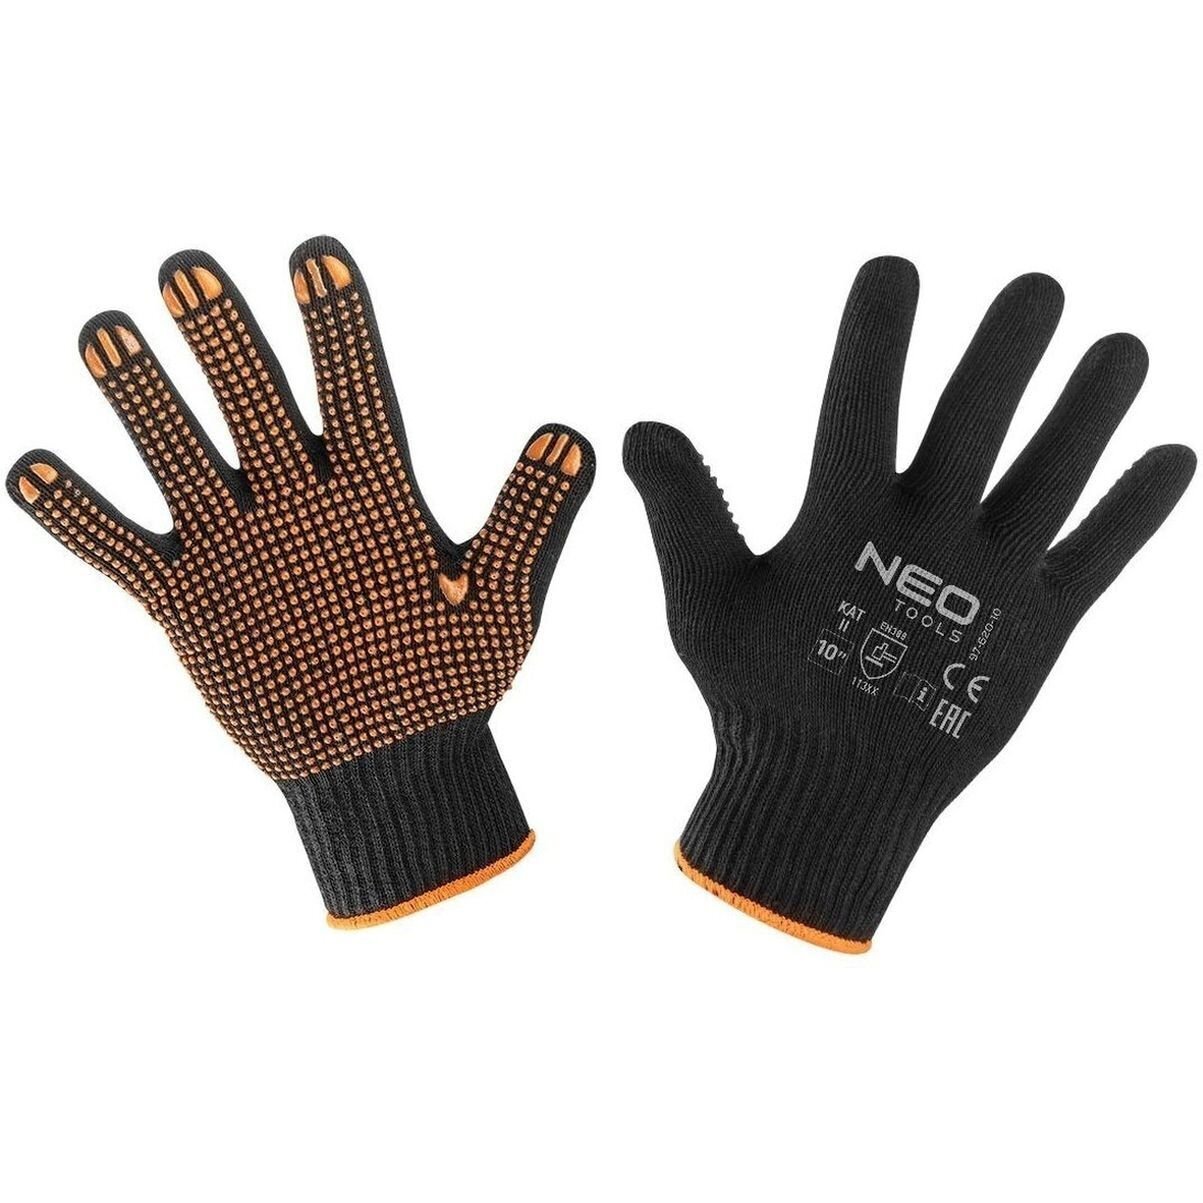 Перчатки Neo Tools рабочие, хлопок и полиэстер, пунктир, размер 10 (97-620-10) фото 